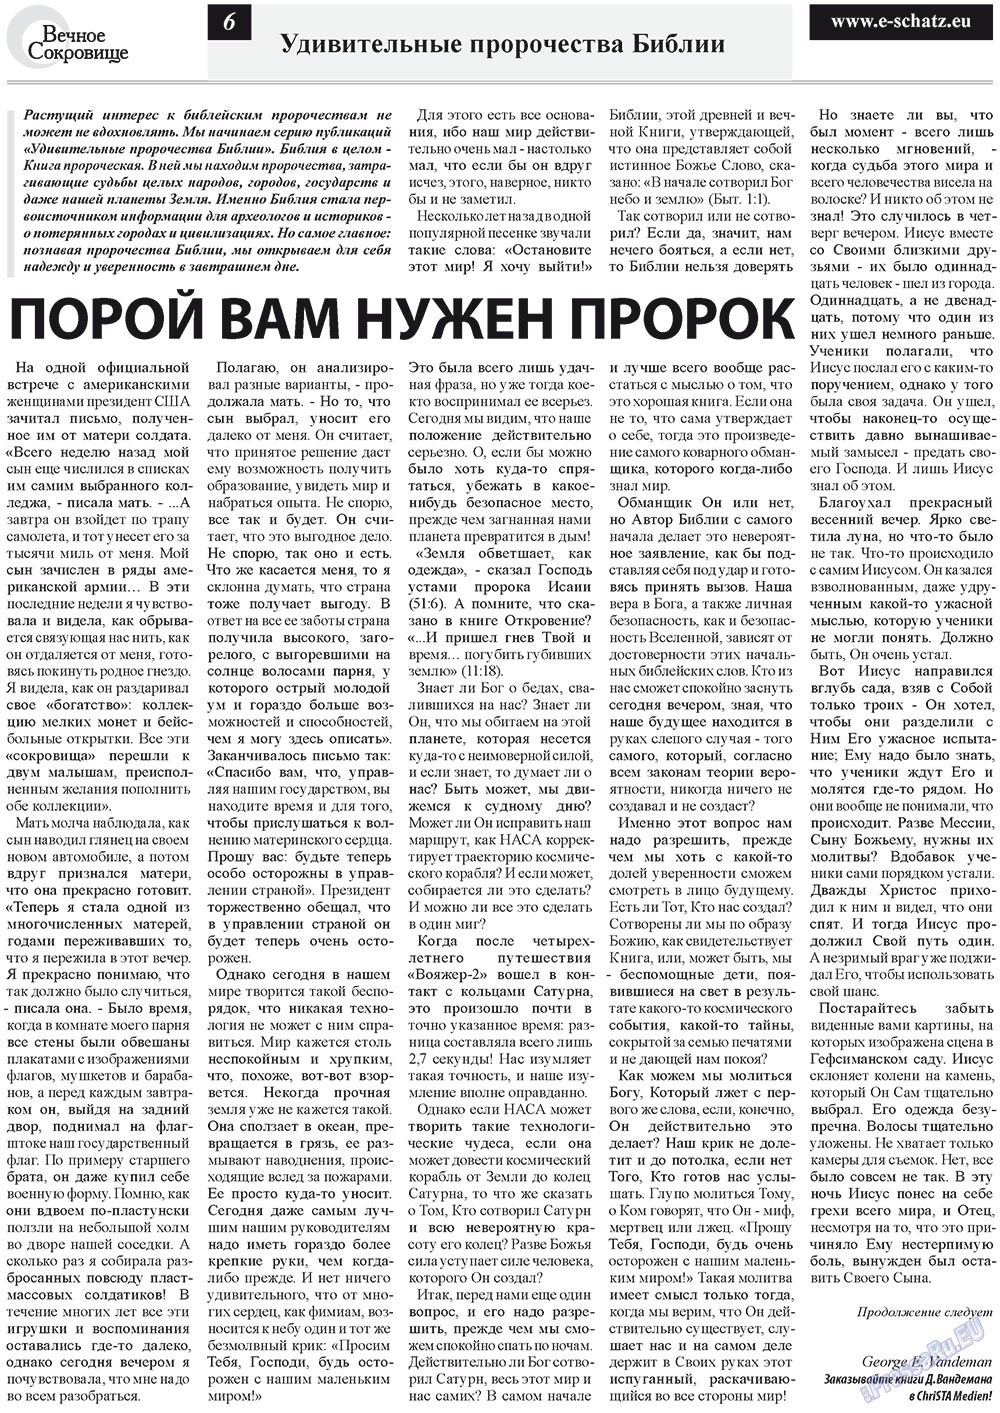 Вечное сокровище, газета. 2012 №3 стр.6